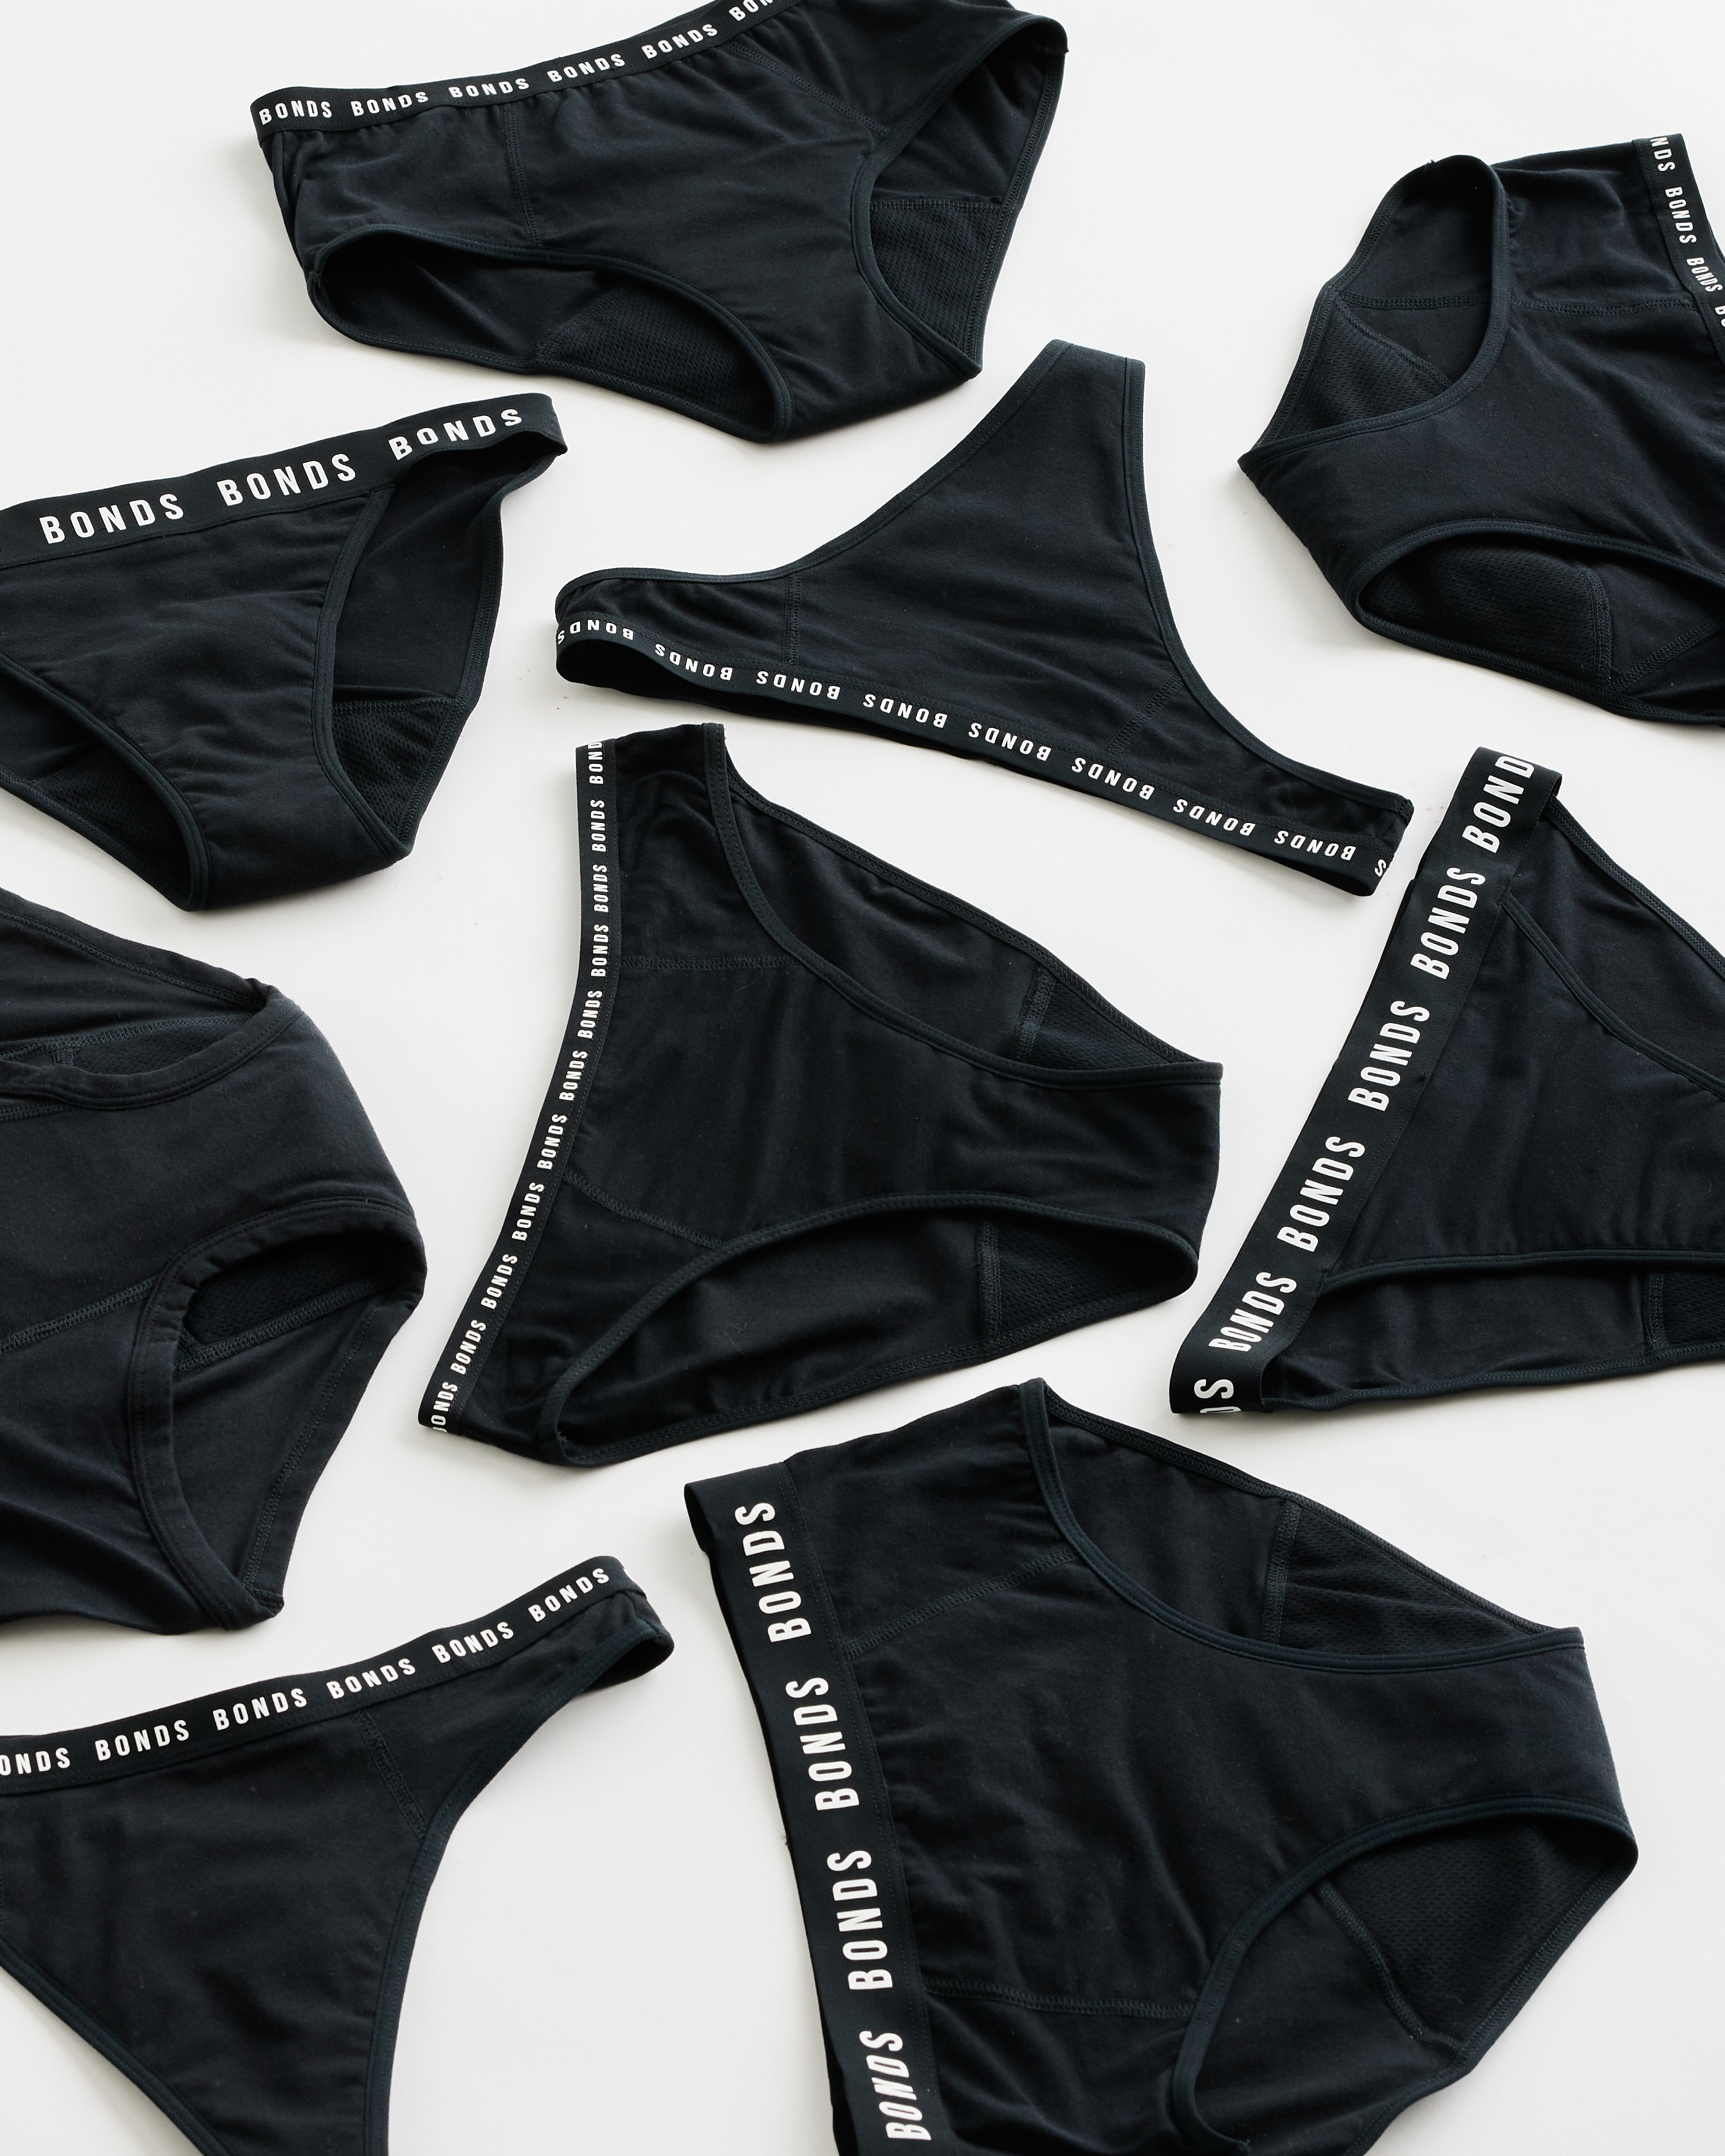 OZSALE  Bonds 5 X Bonds Ladies Womens Hipster Bikini Underwear Briefs  Assorted Pack